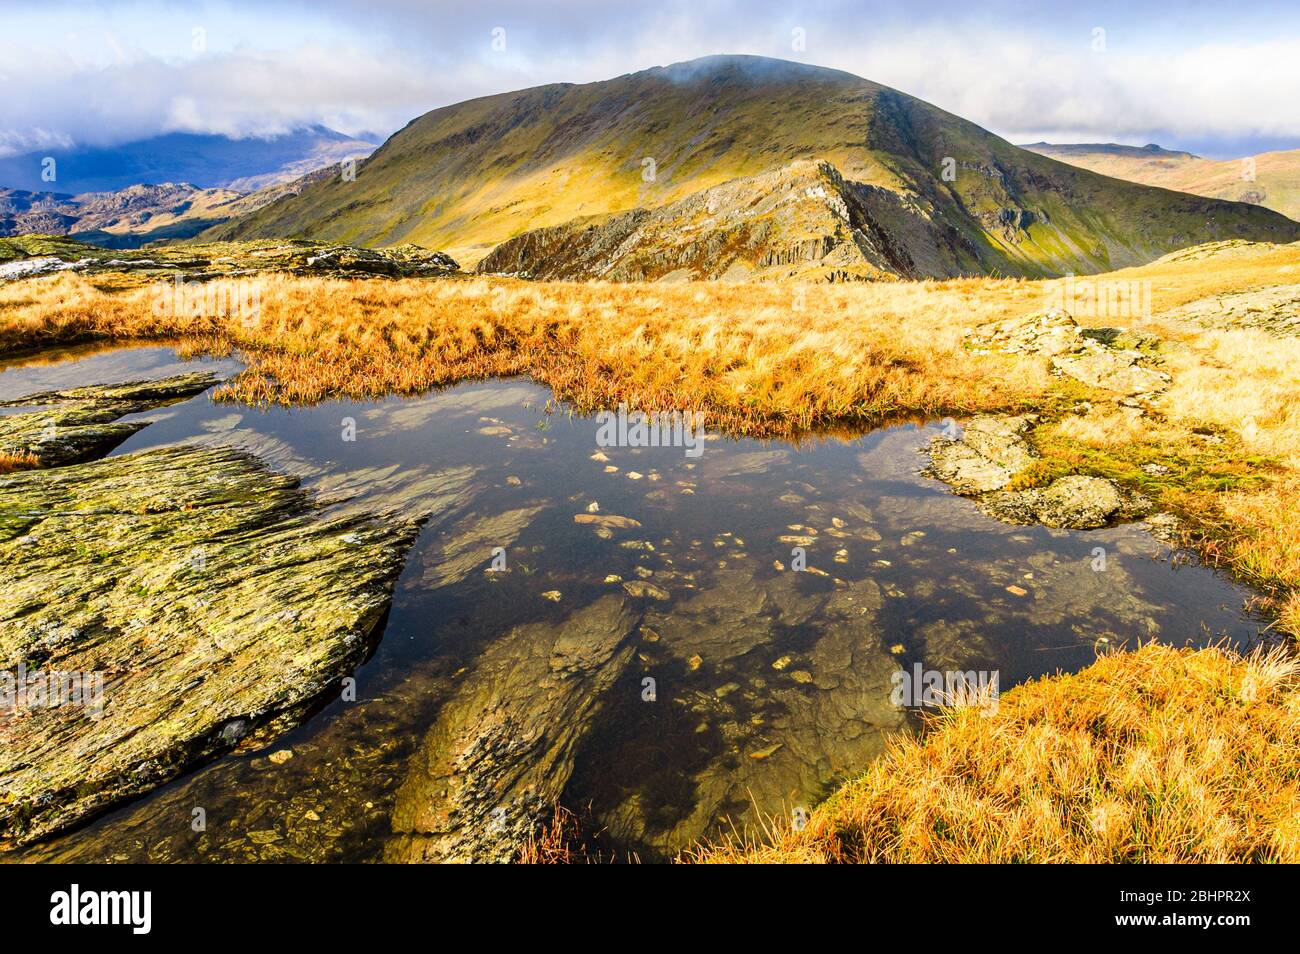 Pool near summit of Moelwyn Bach, Snowdonia, Wales. Craigysgafn ridge leading to Moelwyn Mawr behind. Stock Photo